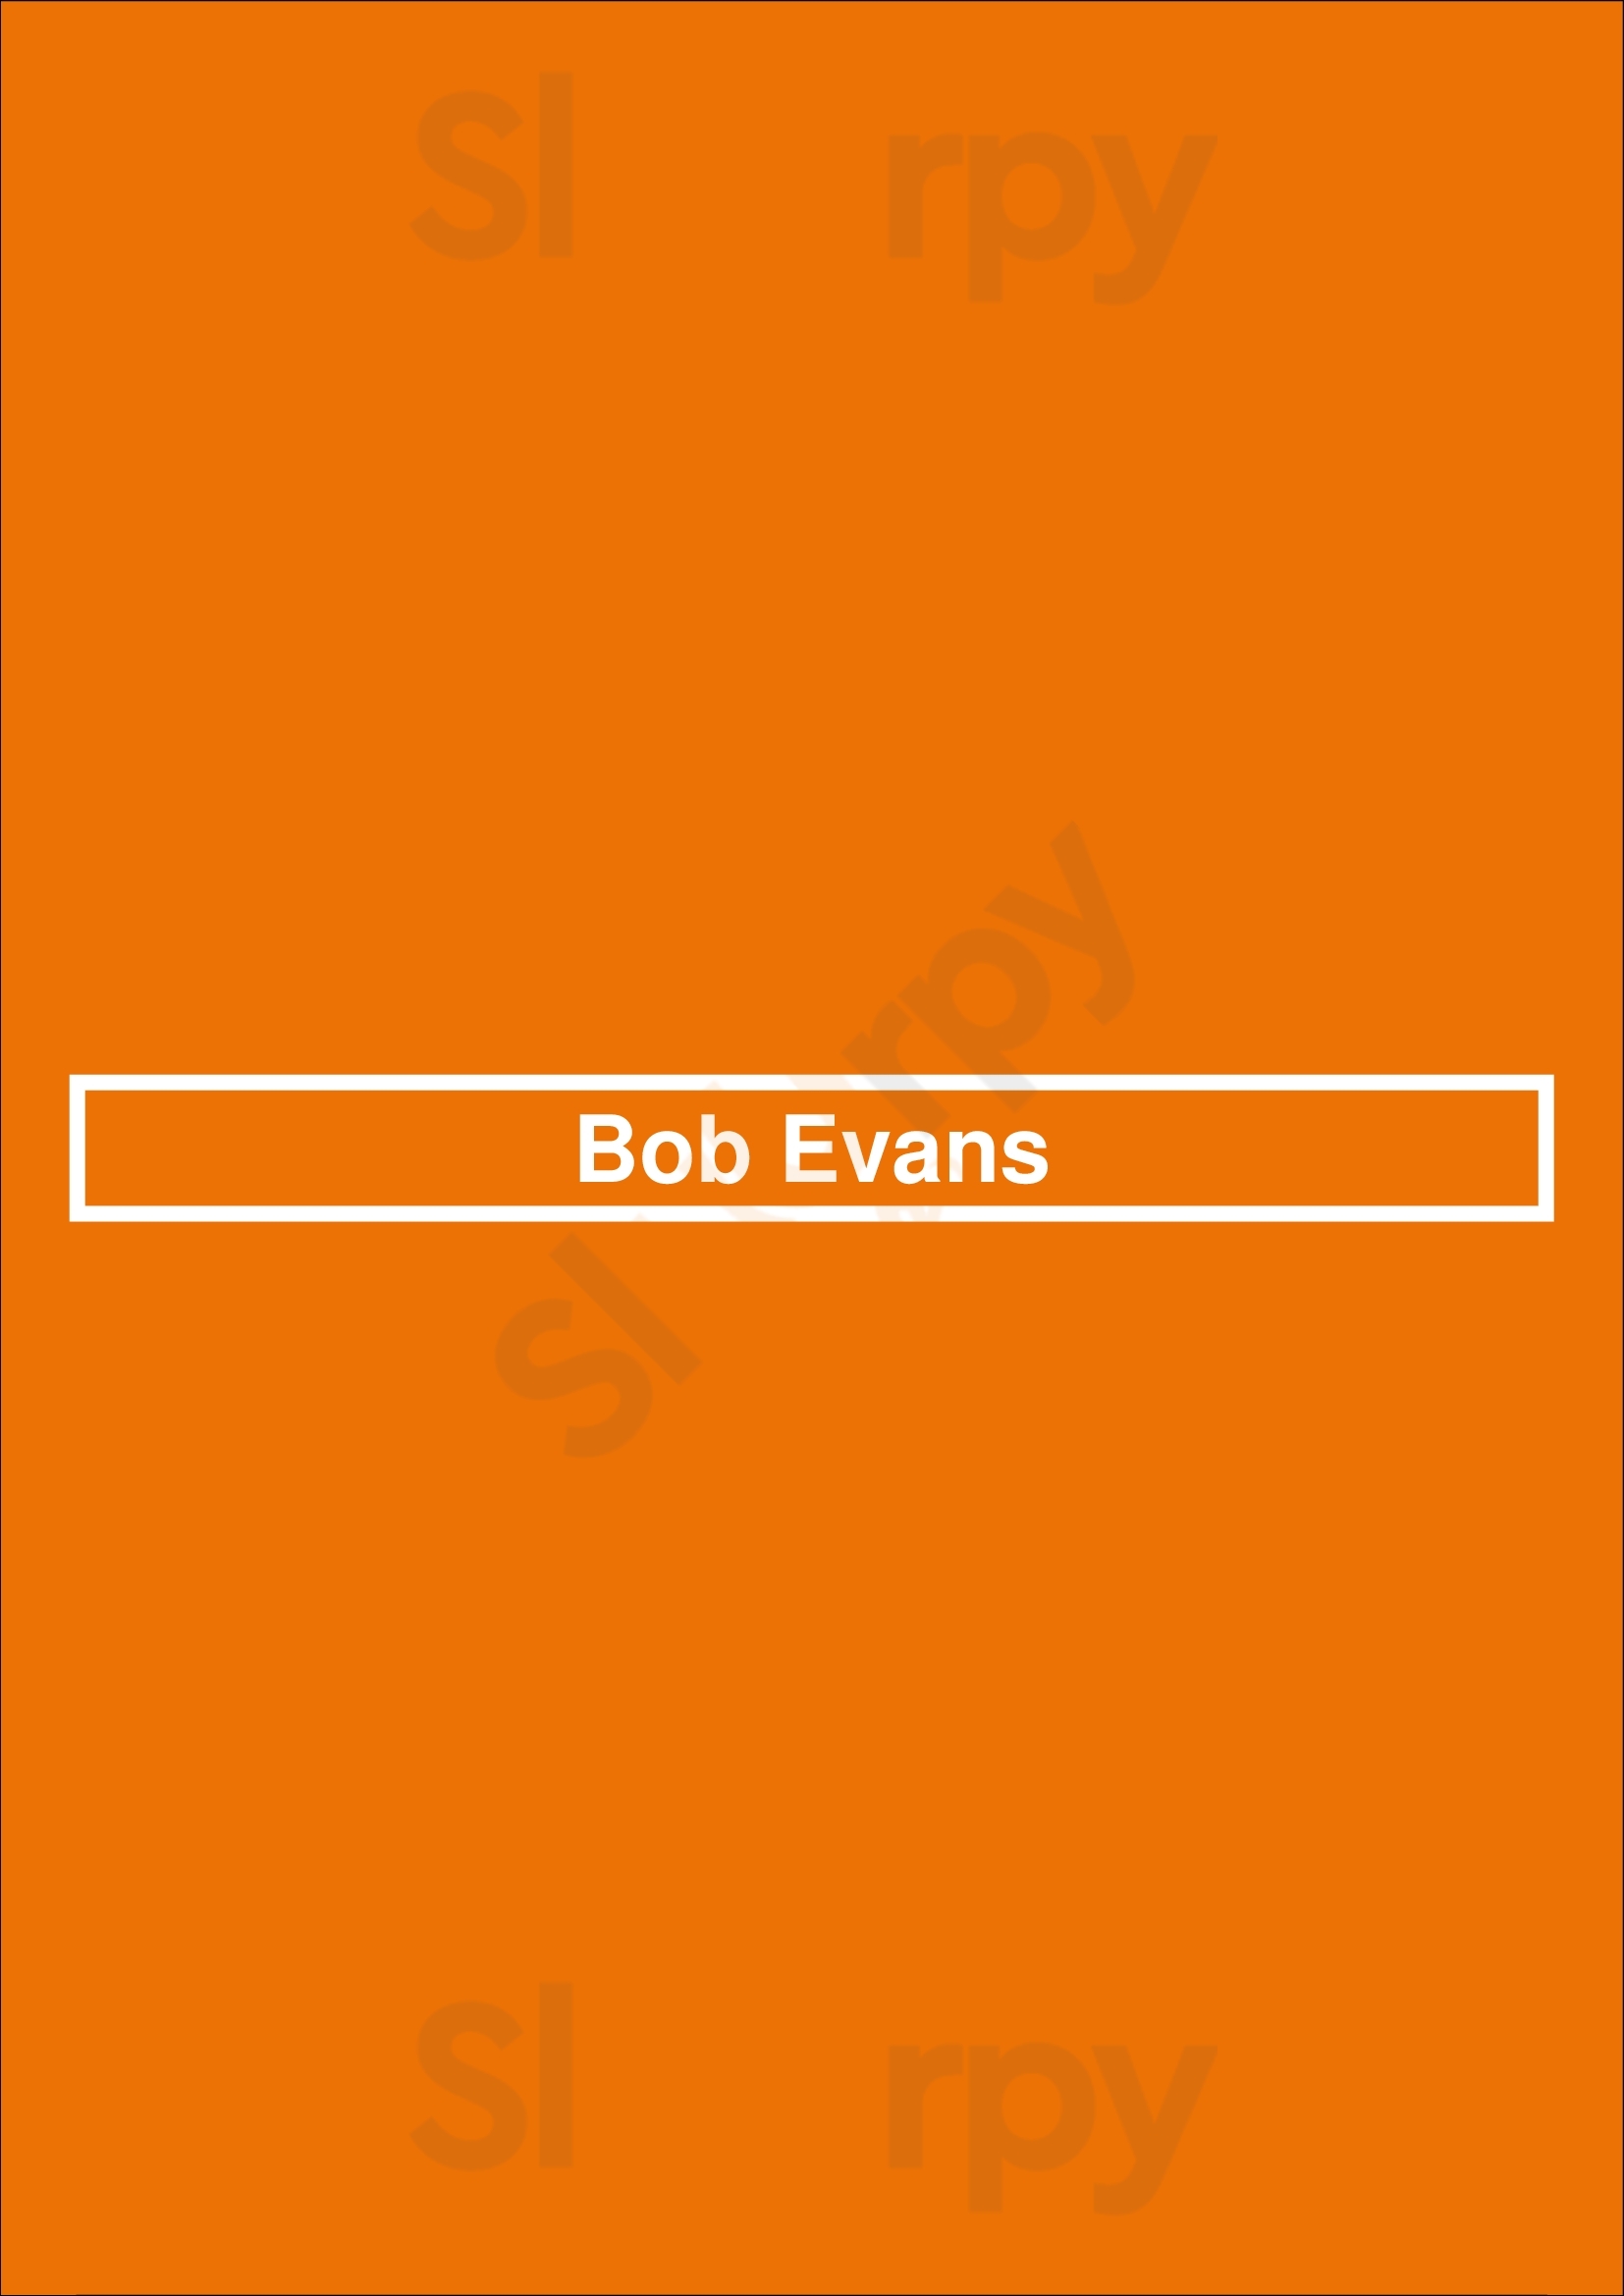 Bob Evans Springfield Menu - 1